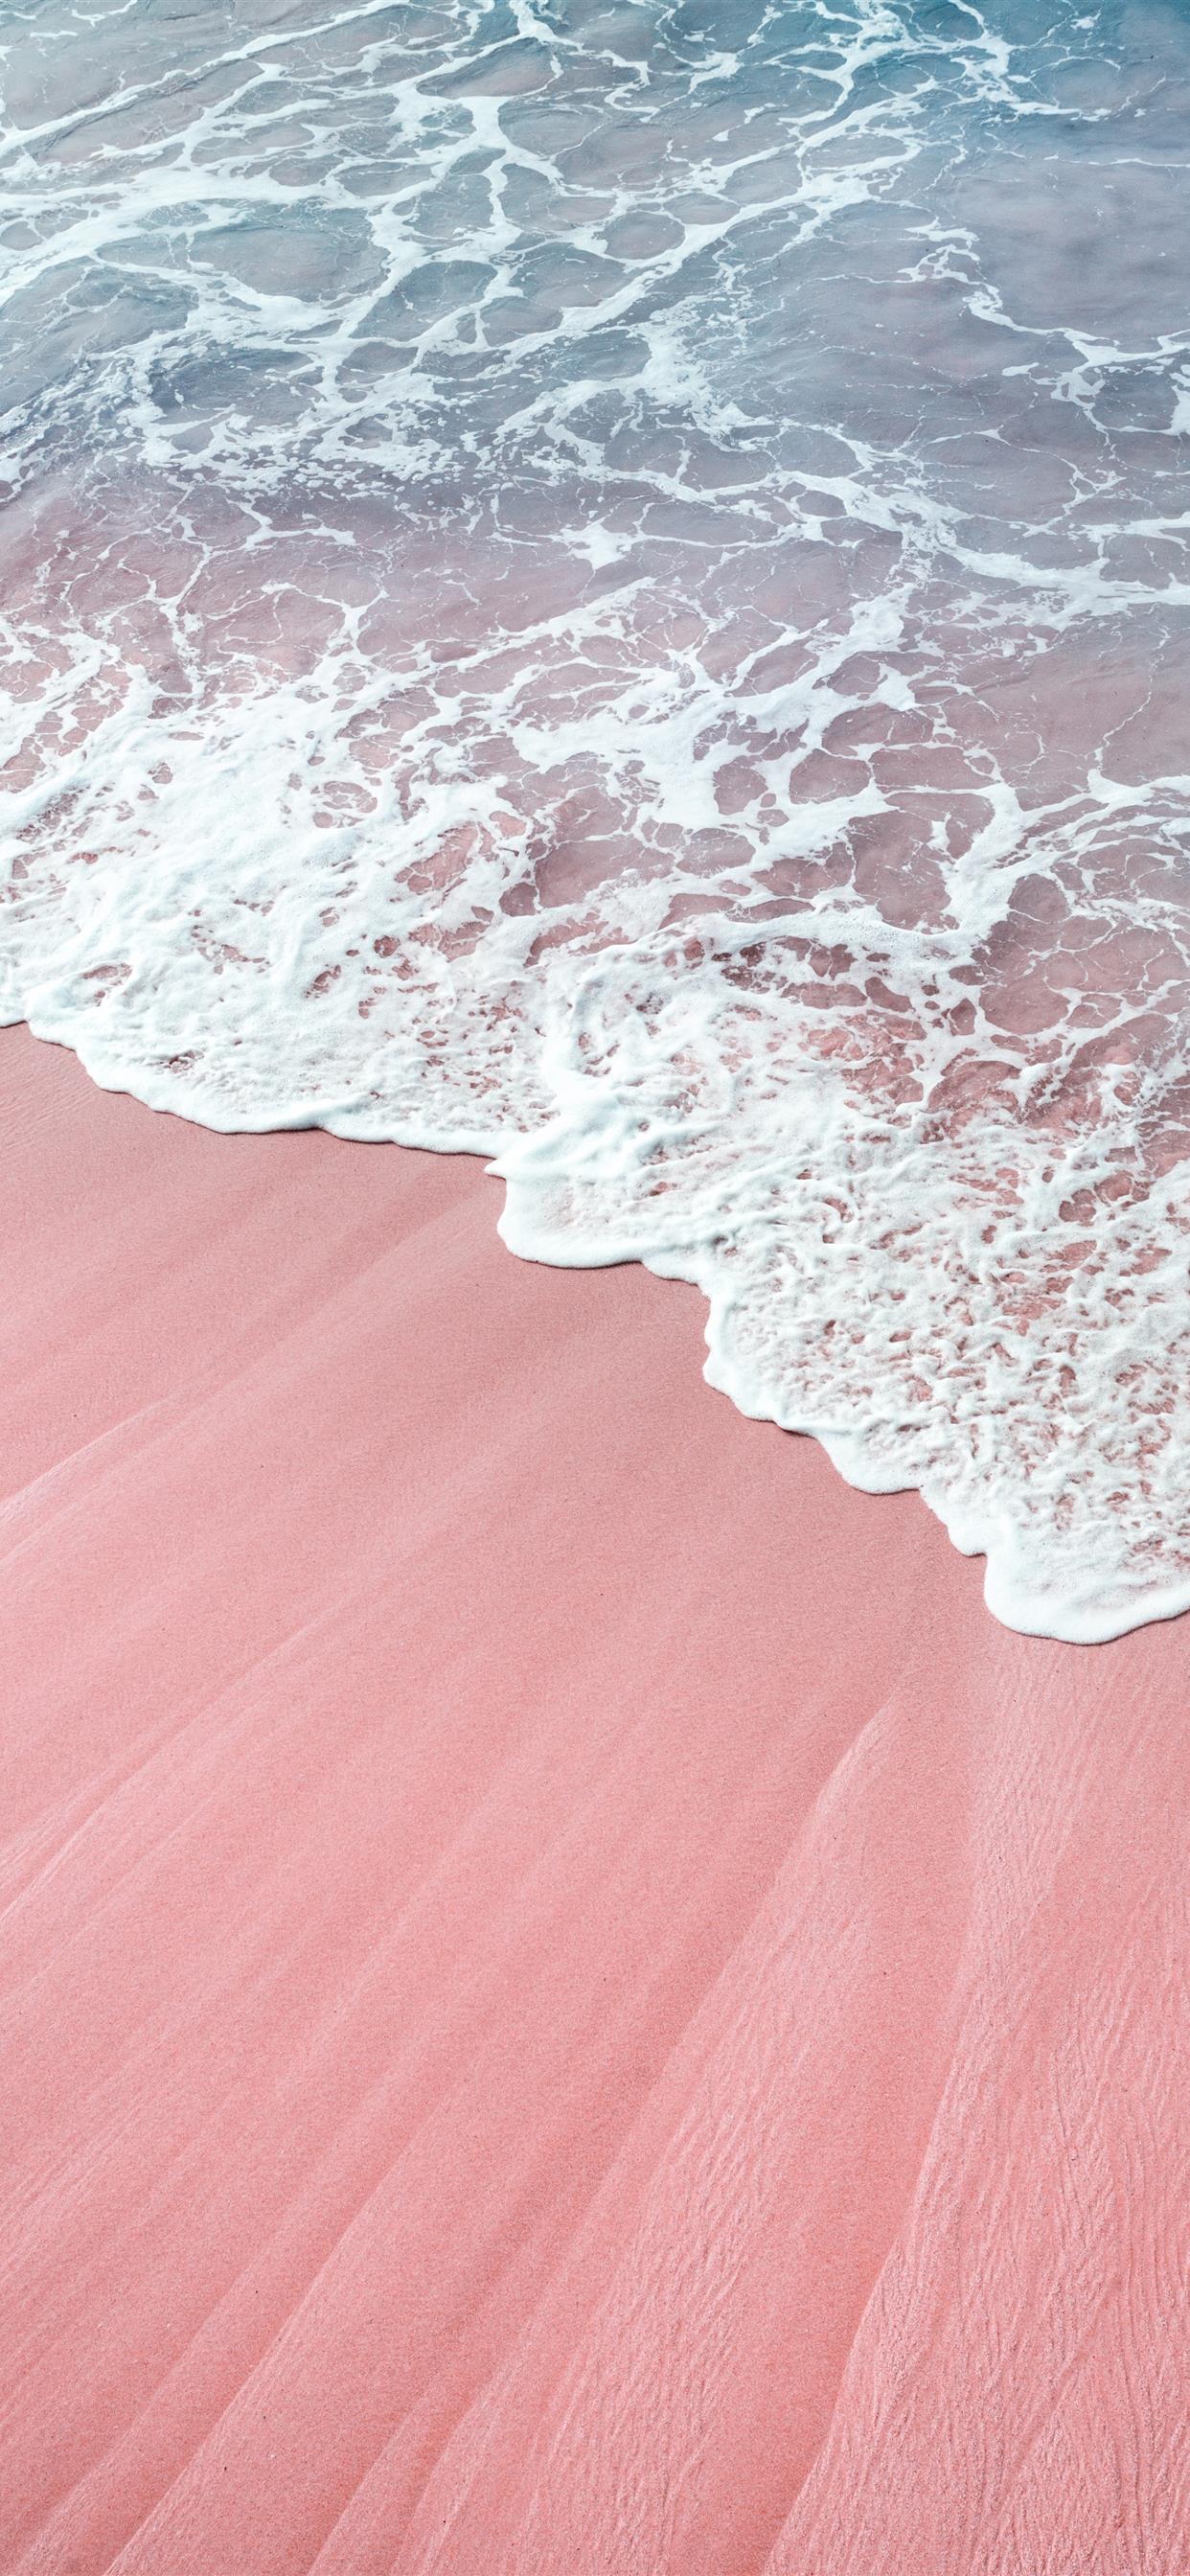 Hình nền iPhone X sóng màu hồng: Sóng màu hồng mềm mại và tươi sáng sẽ làm cho màn hình iPhone X của bạn trở nên sống động hơn bao giờ hết. Những tông màu hồng khác nhau được tạo ra từ độ kênh chỉ khác nhau của sóng lên màn hình, tạo ra một hiệu ứng sống động và độc đáo. Cập nhật ngay hình nền sóng màu hồng đẹp nhất cho iPhone X của bạn!